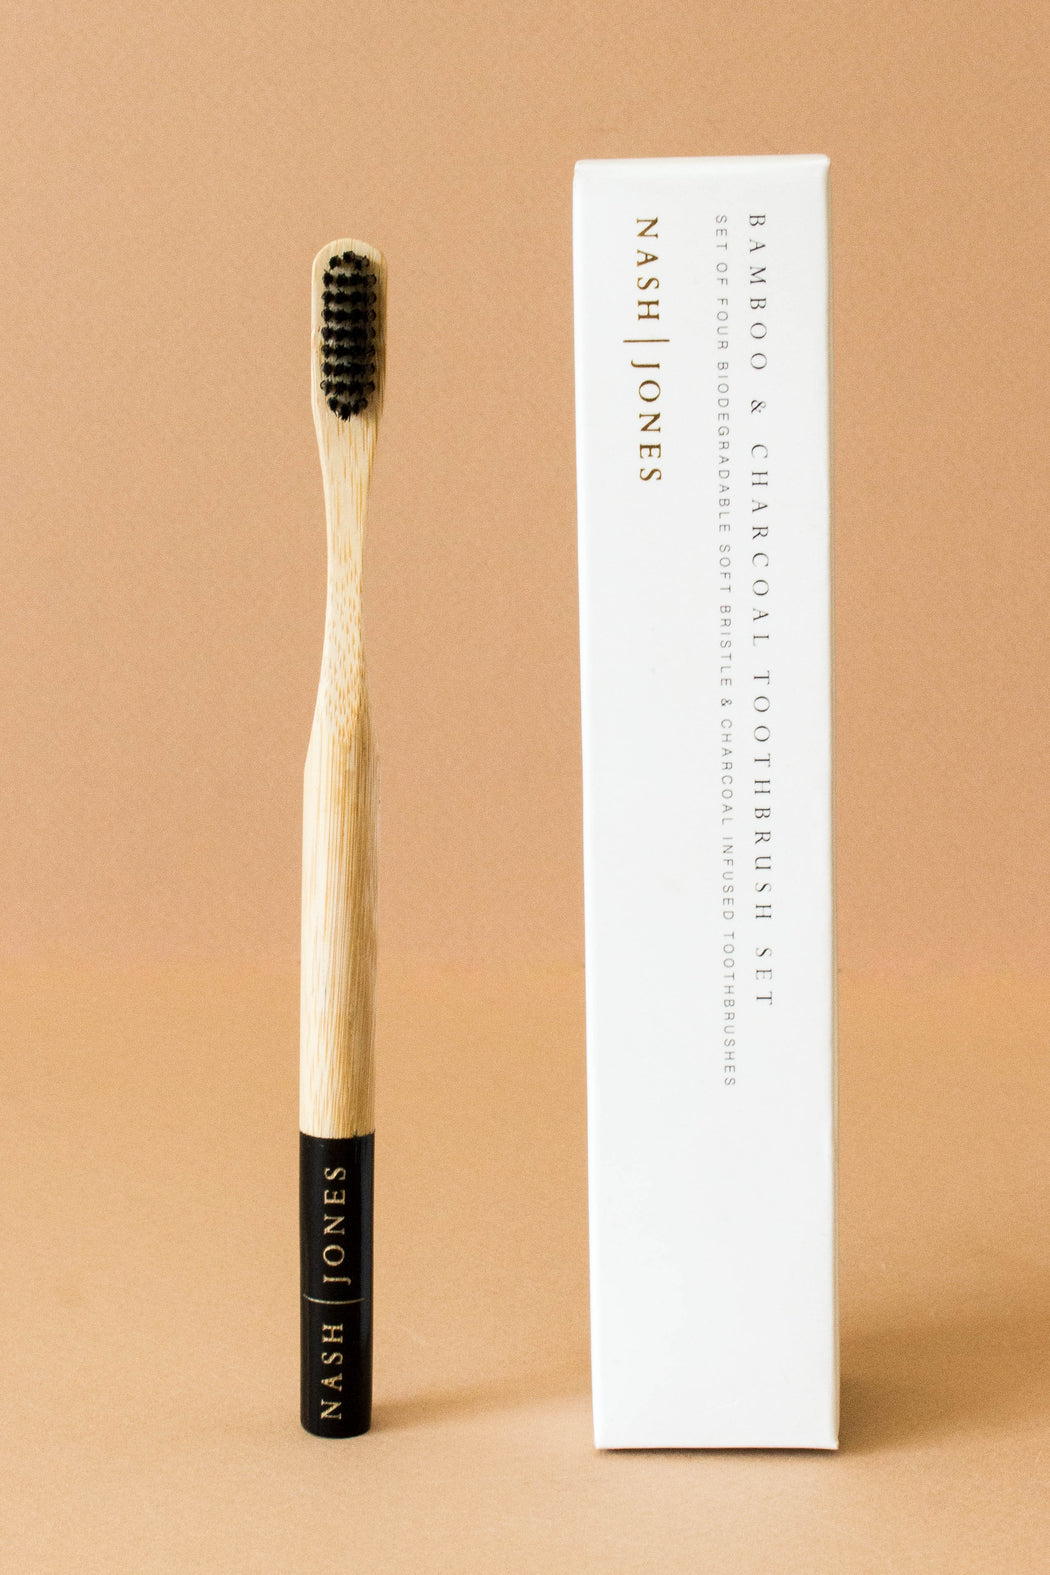 Nash & Jones - Bamboo & Charcoal Toothbrush